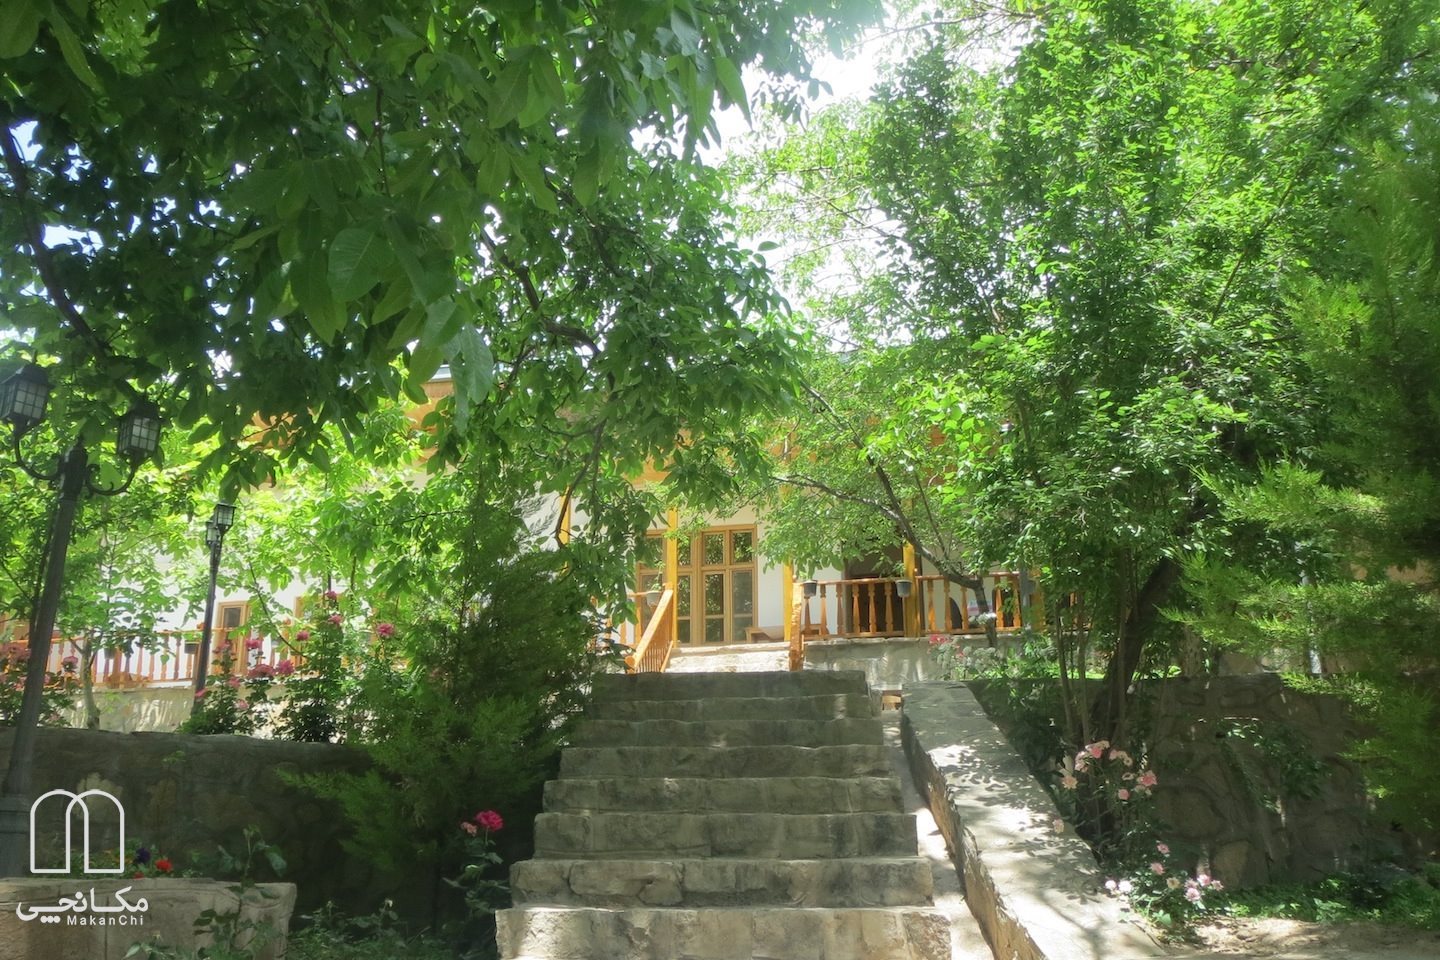 هتل سنتی خانه گل شهمیرزاد سمنان